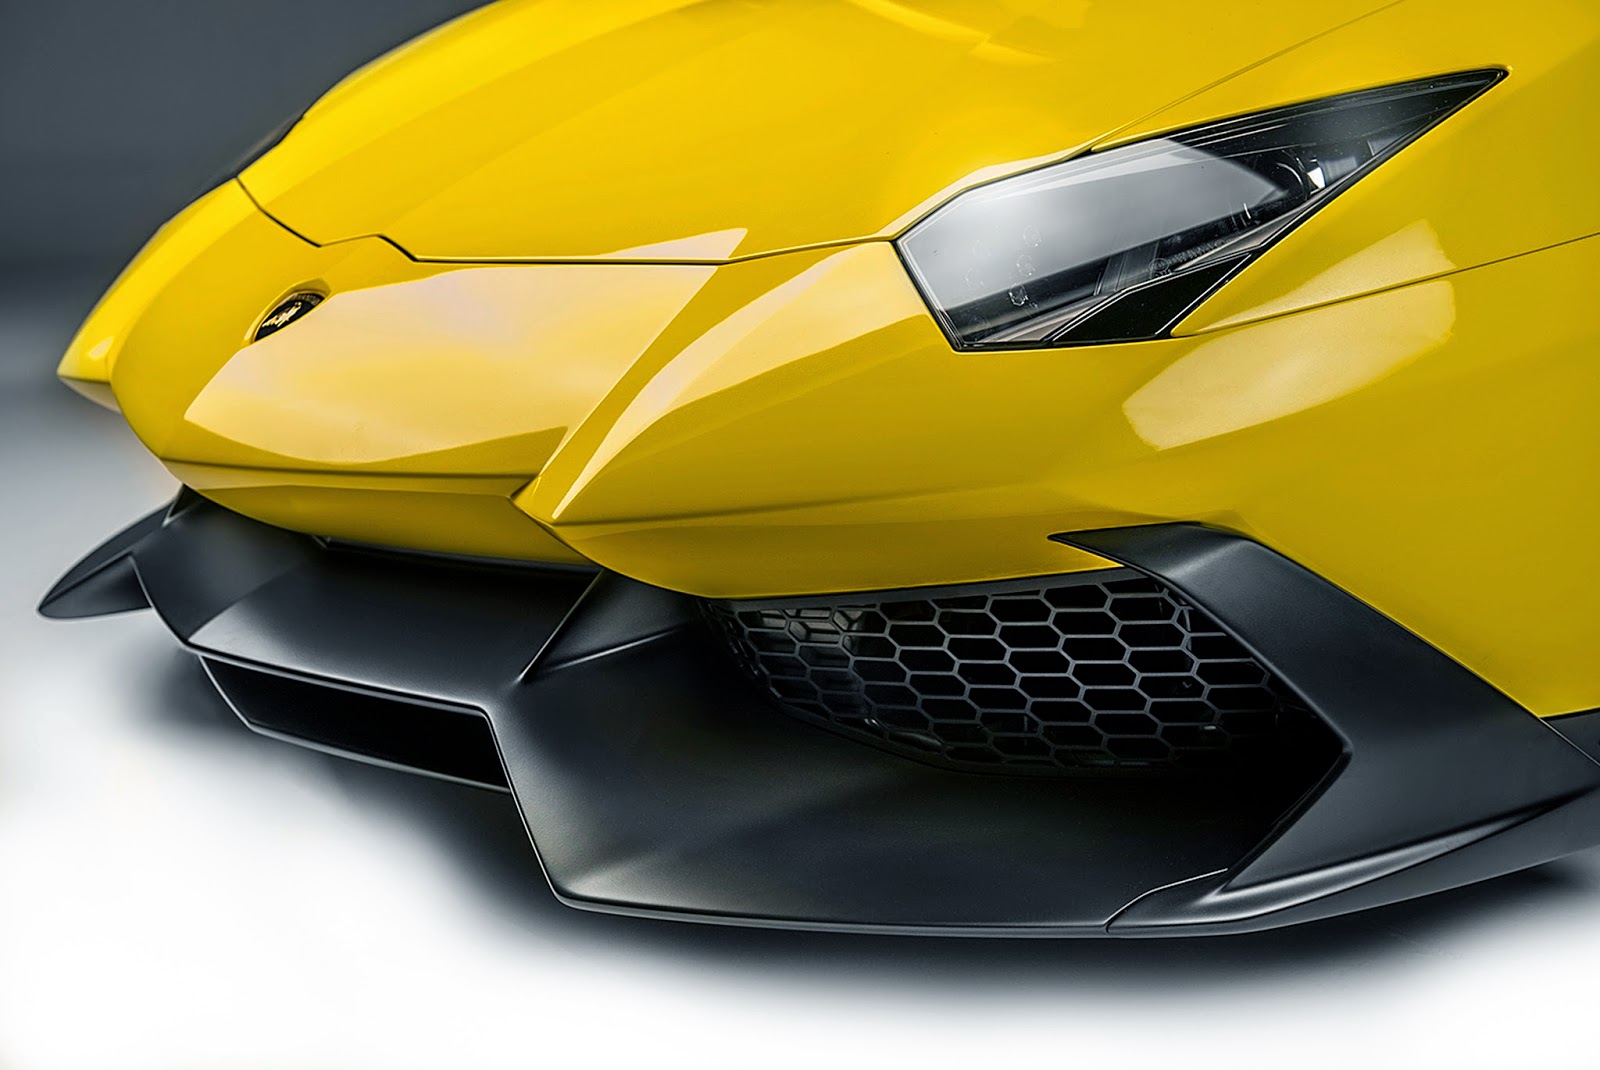 Ultimate Cars - Test Drives & Car Reviews: Lamborghini Aventador LP 720-4  50° Anniversario